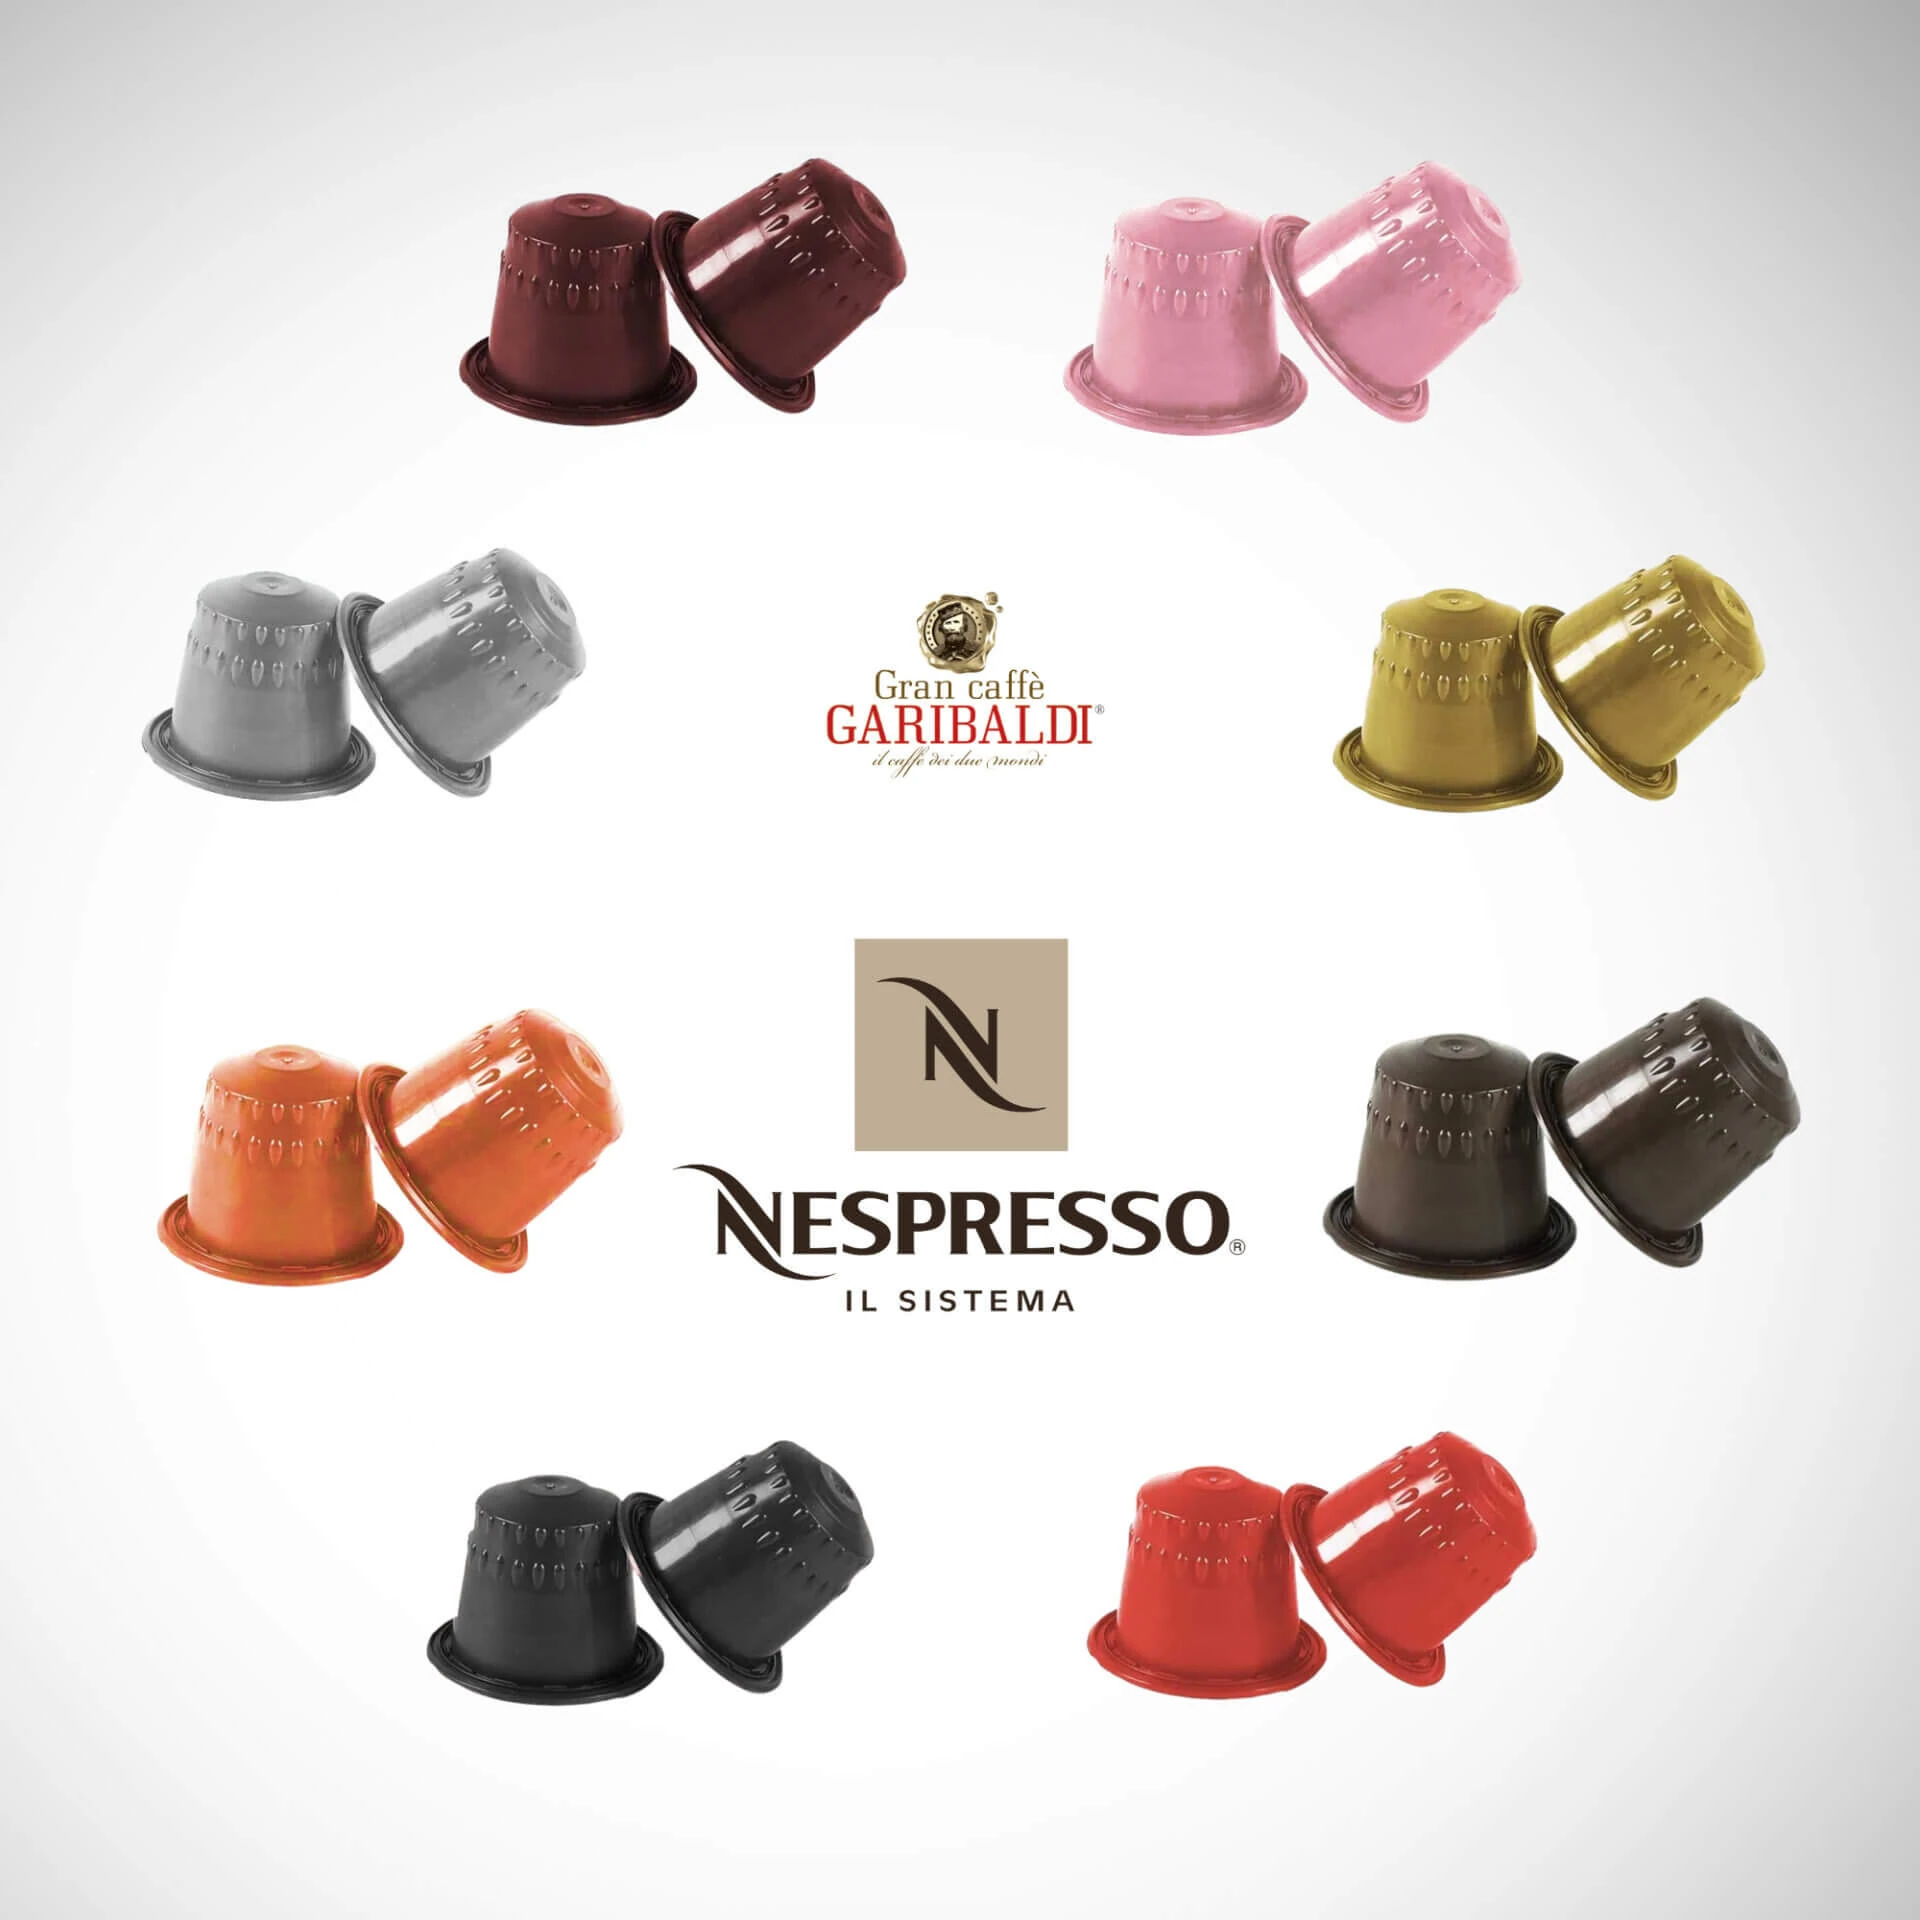 NESPRESSO Coffee Capsules GRAN CAFFE GARIBALDI Intenso, 10 pcs - Garibaldi